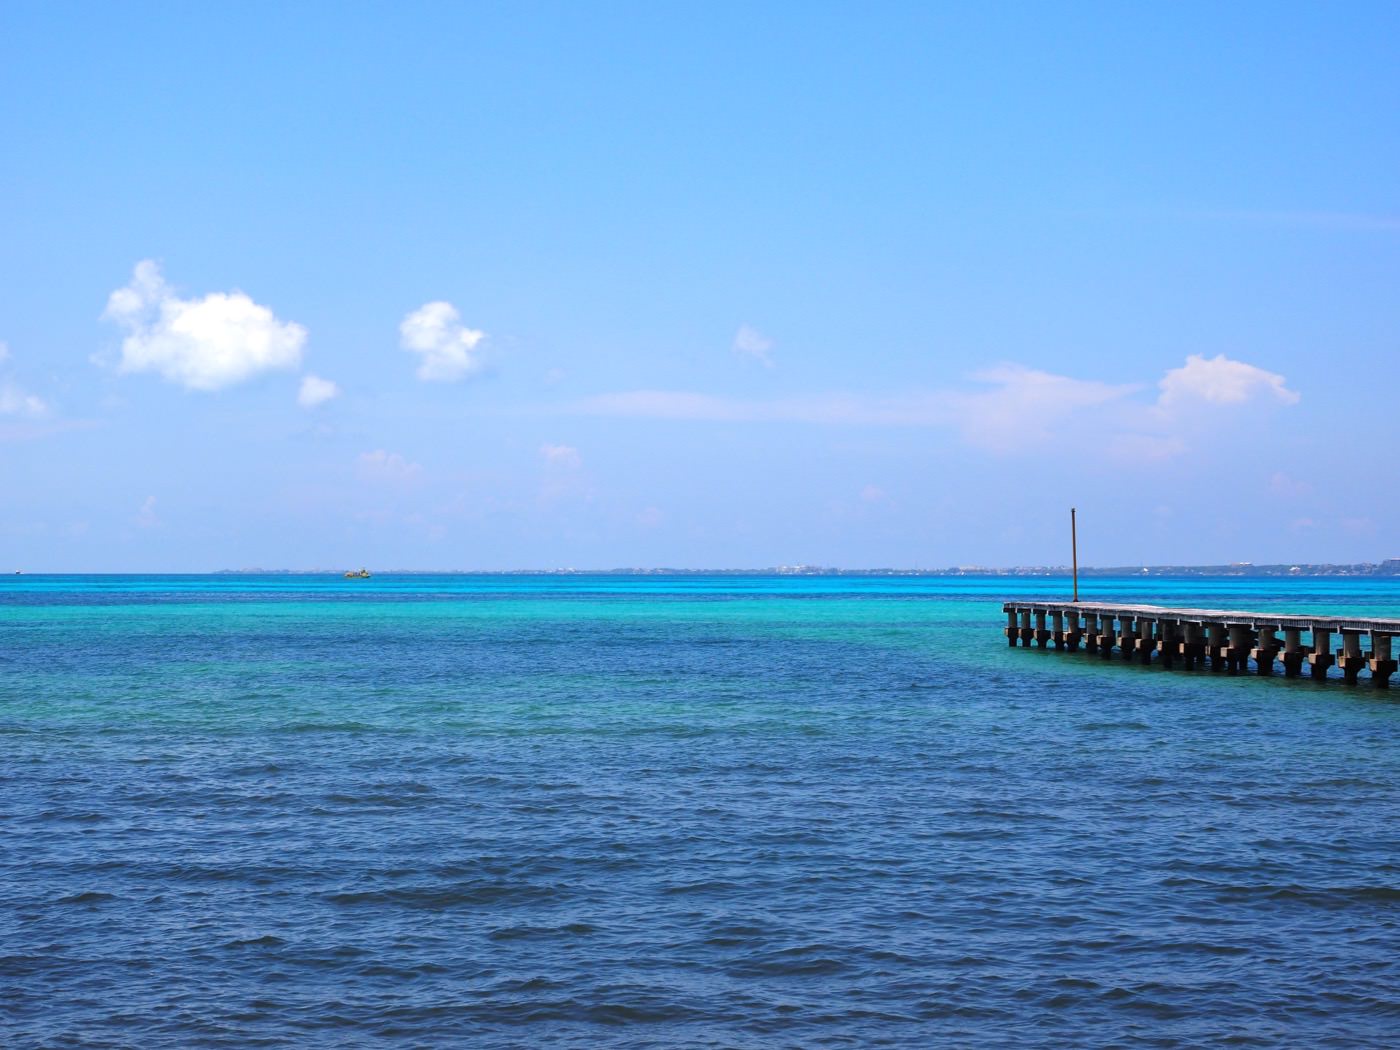 坎昆景點 加勒比海 Isla Mujeres 女人島 在 Playa Norte 北角海灘看海野餐 - 一口冒險 Bitesized Adventure